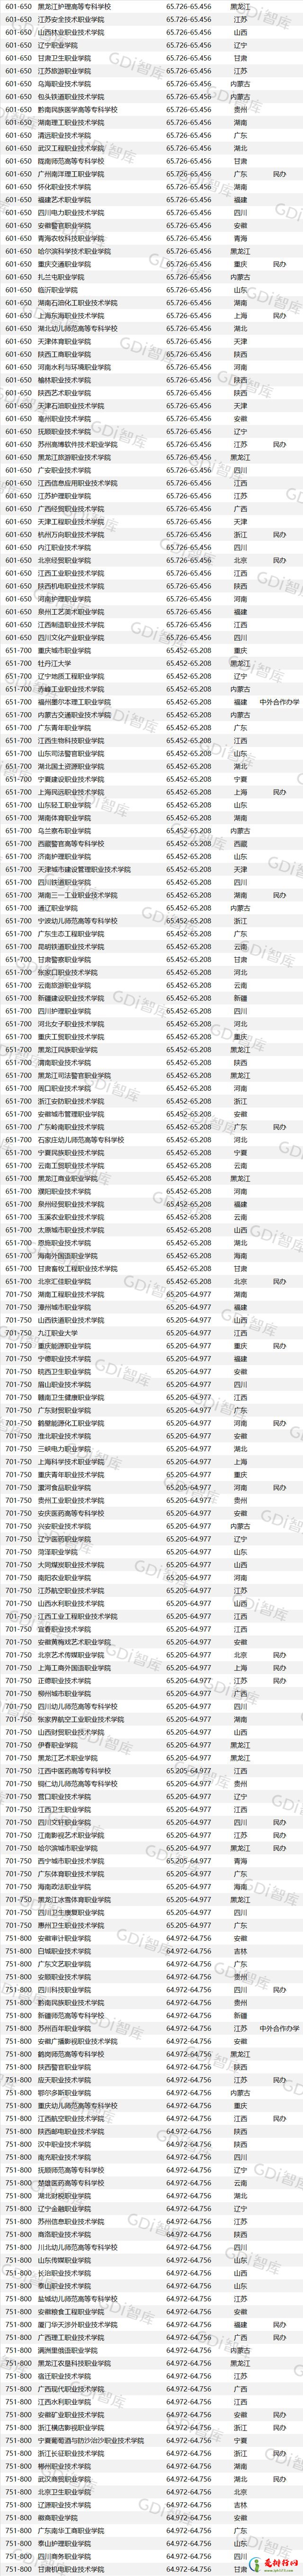 2022GDI高职高专排行榜 中国高职高专学校排行榜